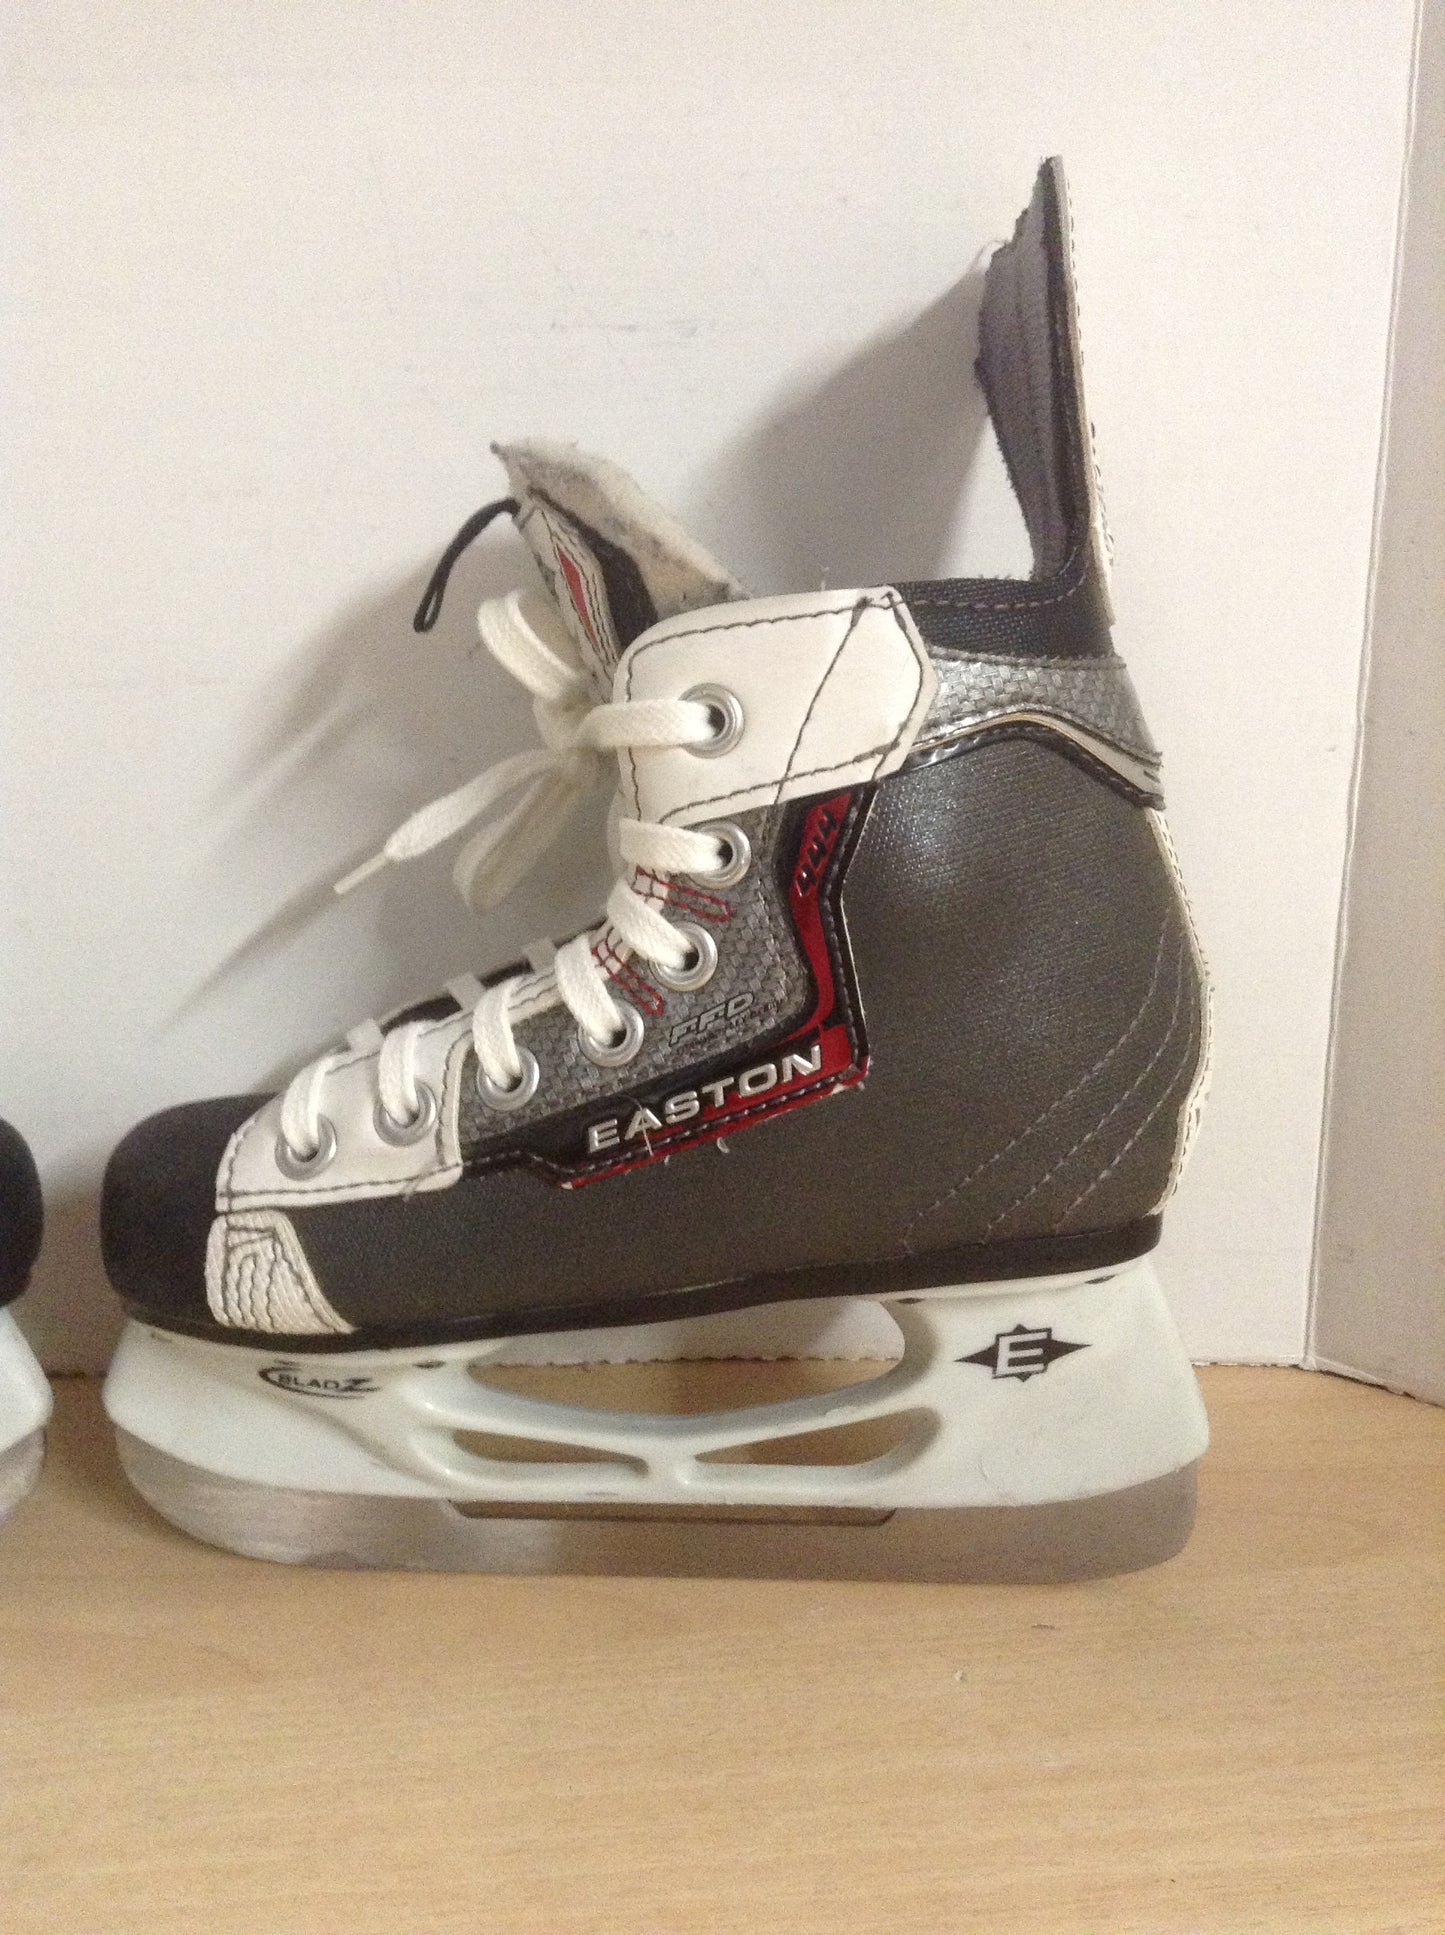 Hockey Skates Child Size 12 Shoe Size Easton